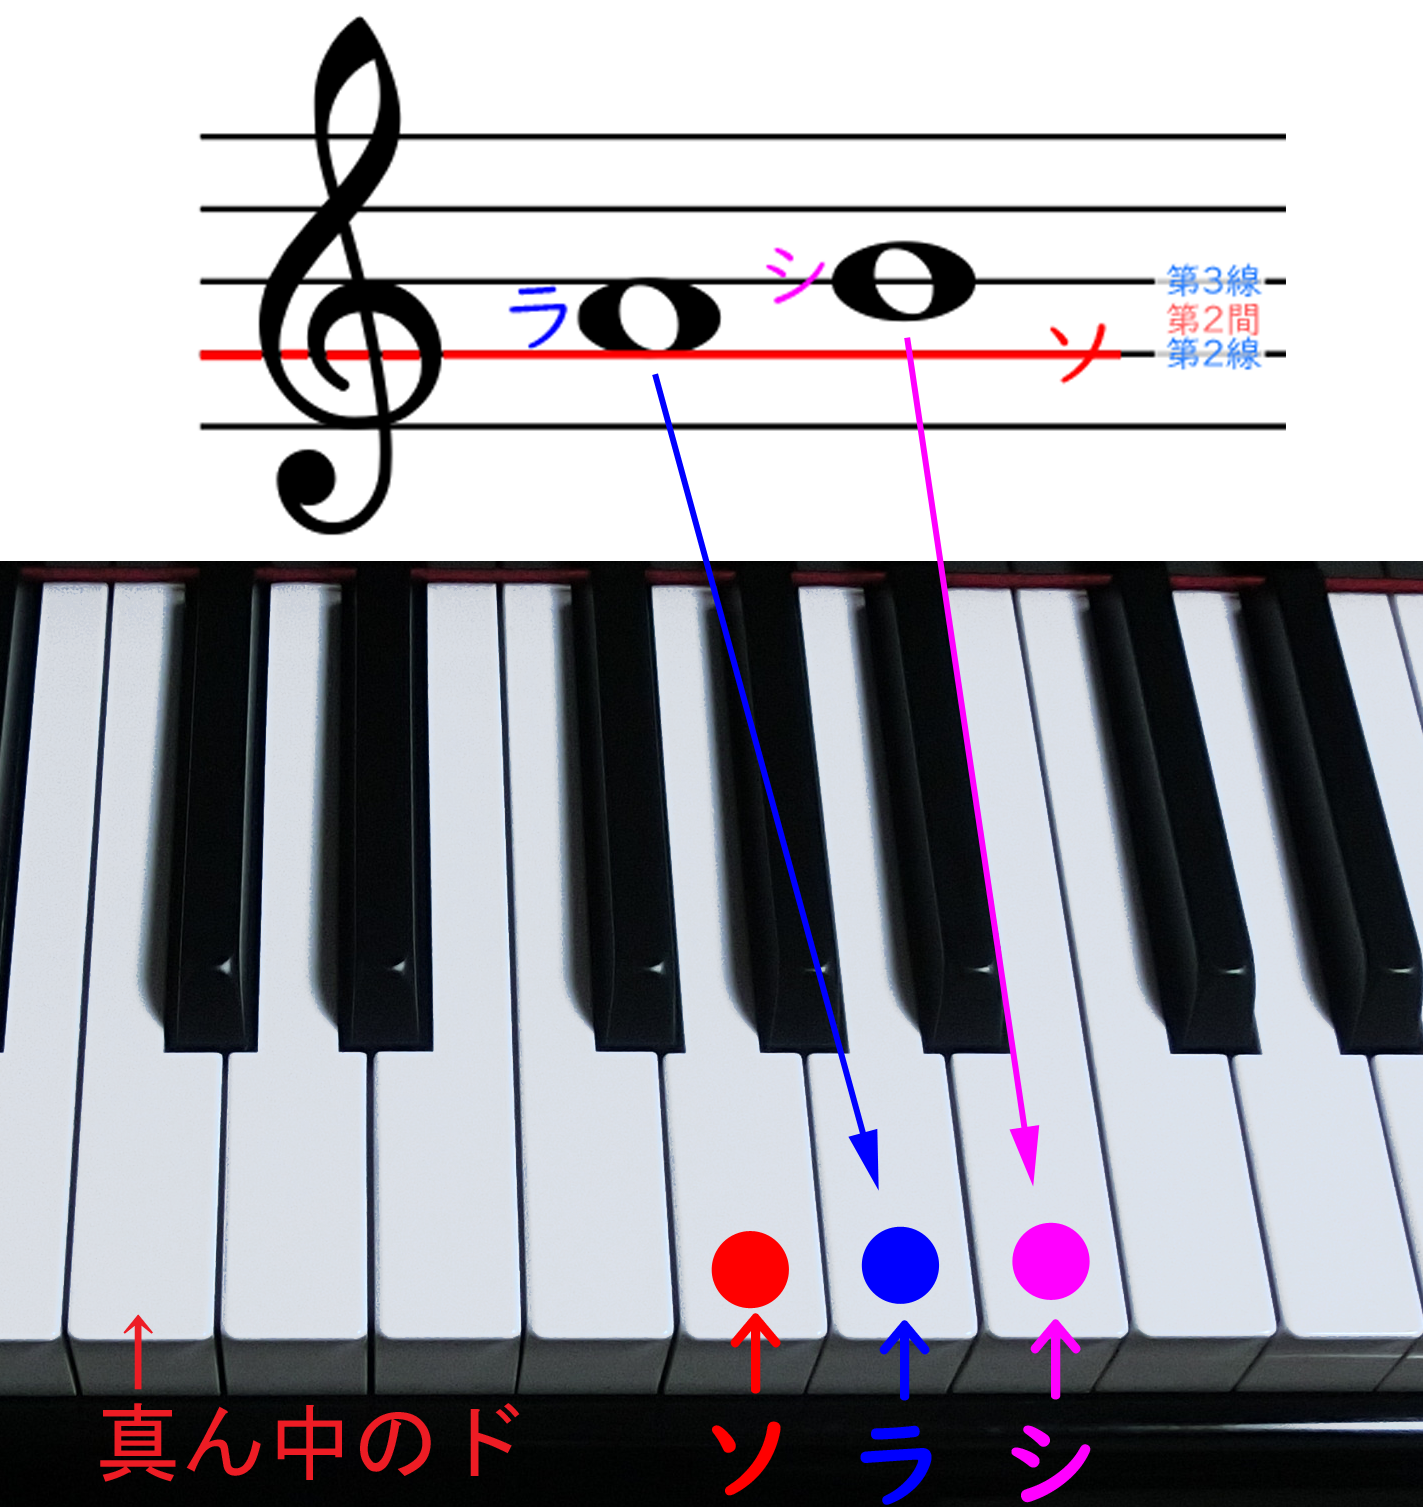 ト音記号の音と鍵盤